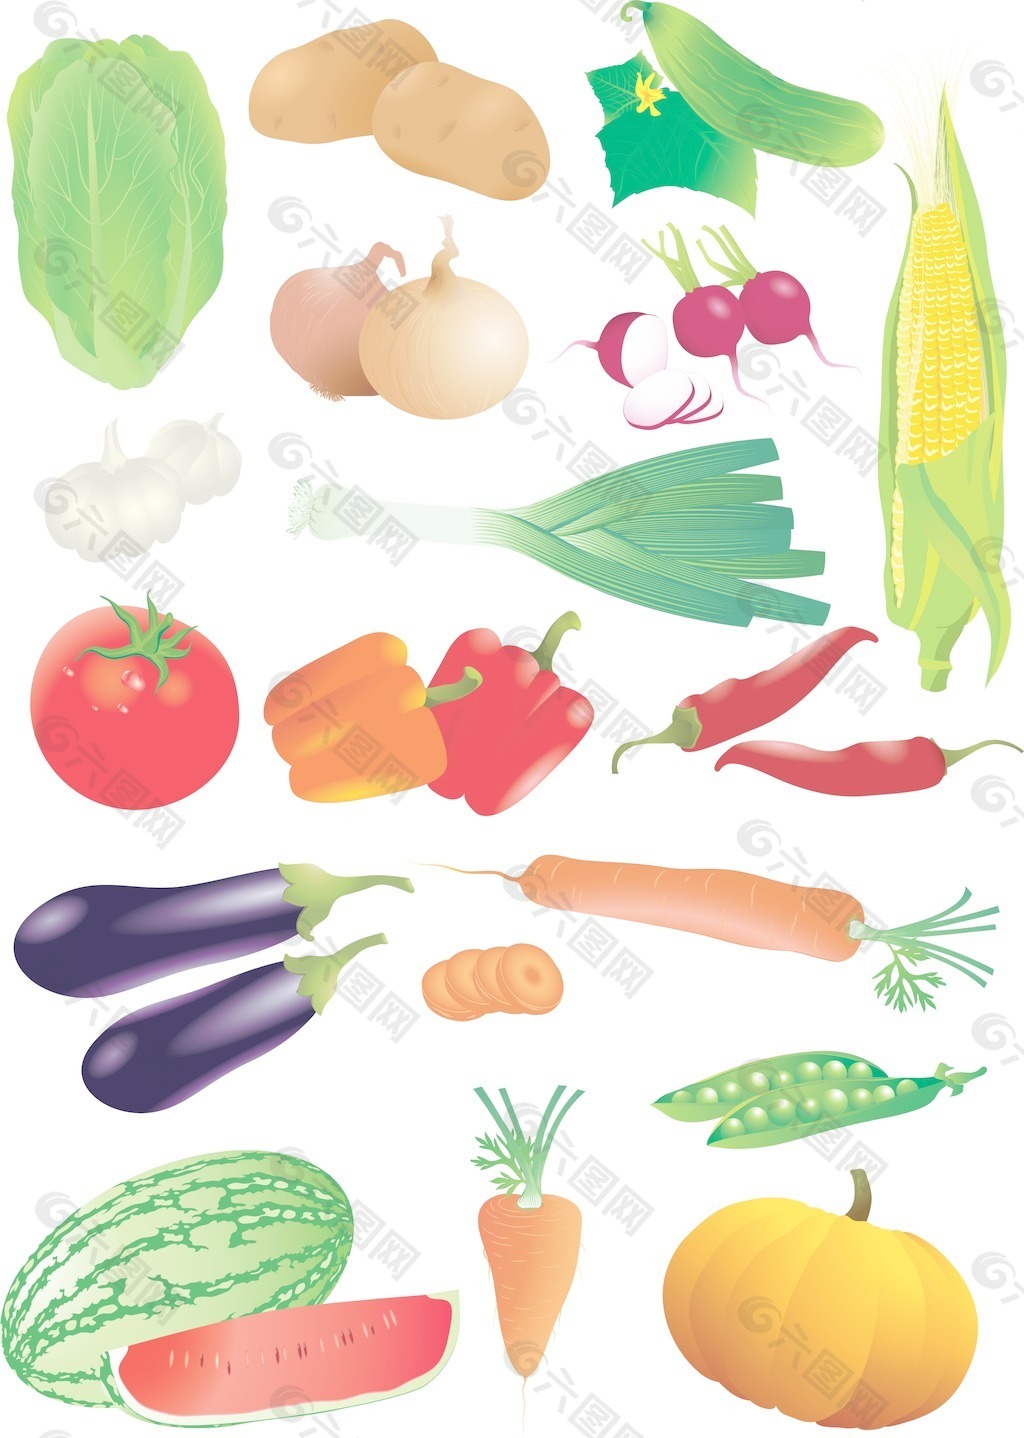 生蔬菜的详细的和现实的向量集